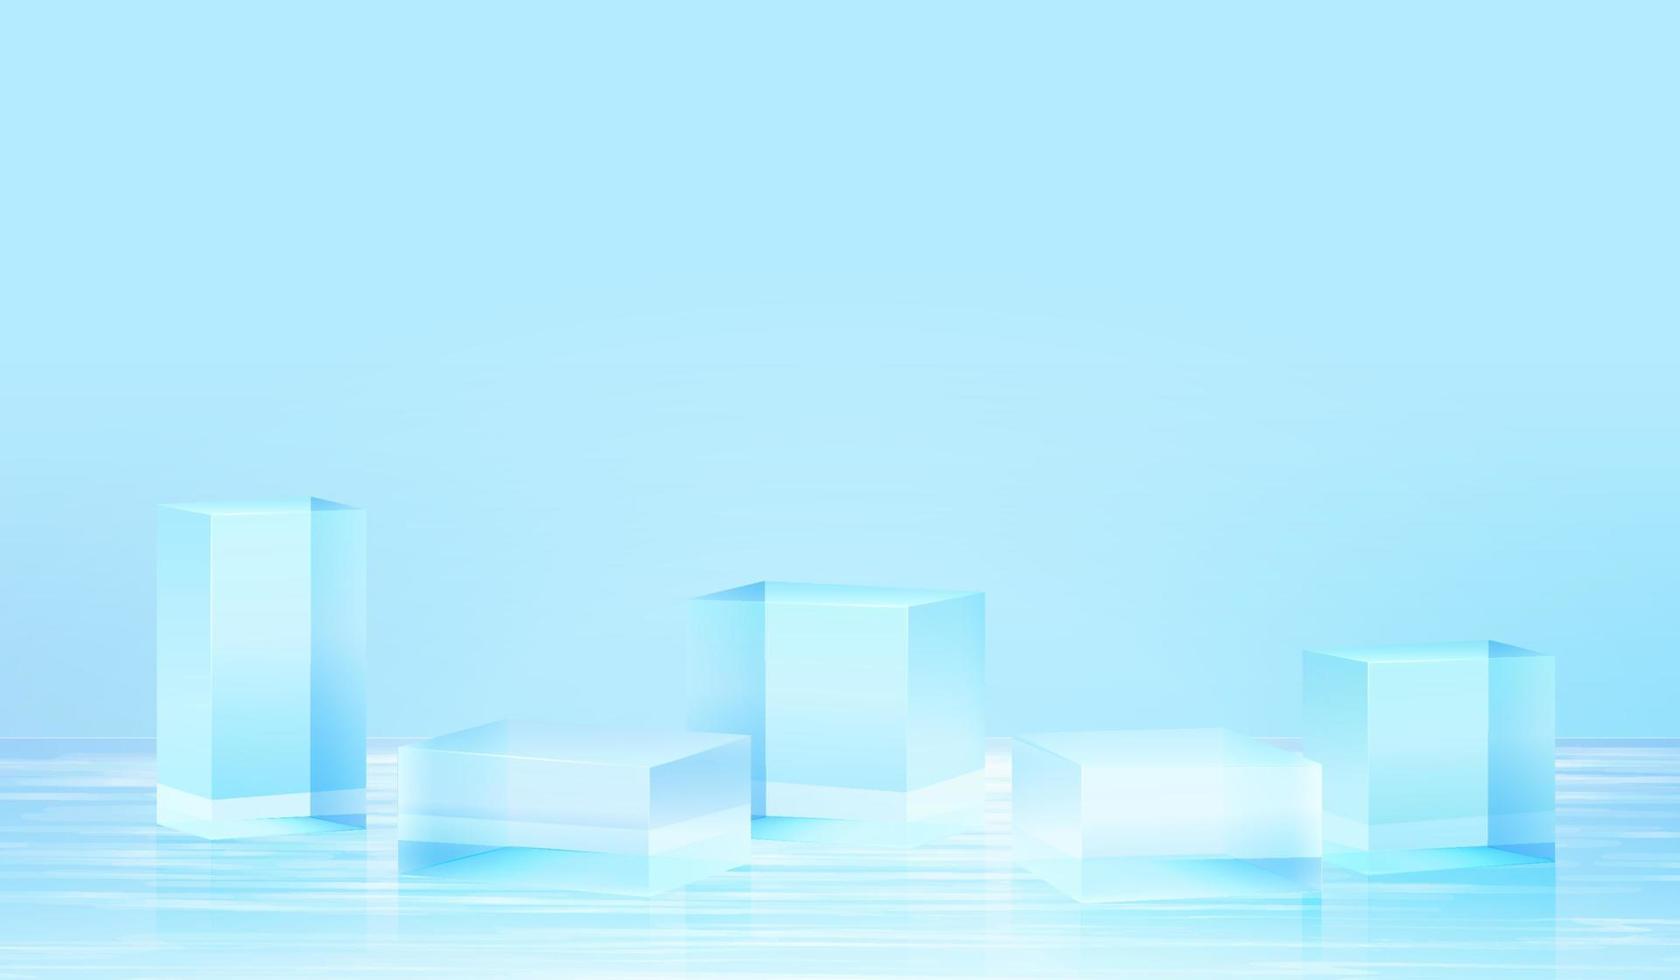 Plate-forme de fond 3D avec verre bleu dans l'eau. vecteur de fond plate-forme de podium en cristal de rendu 3d. stand show produit cosmétique. vitrine de scène sur piédestal studio de verre moderne dans la plate-forme d'eau